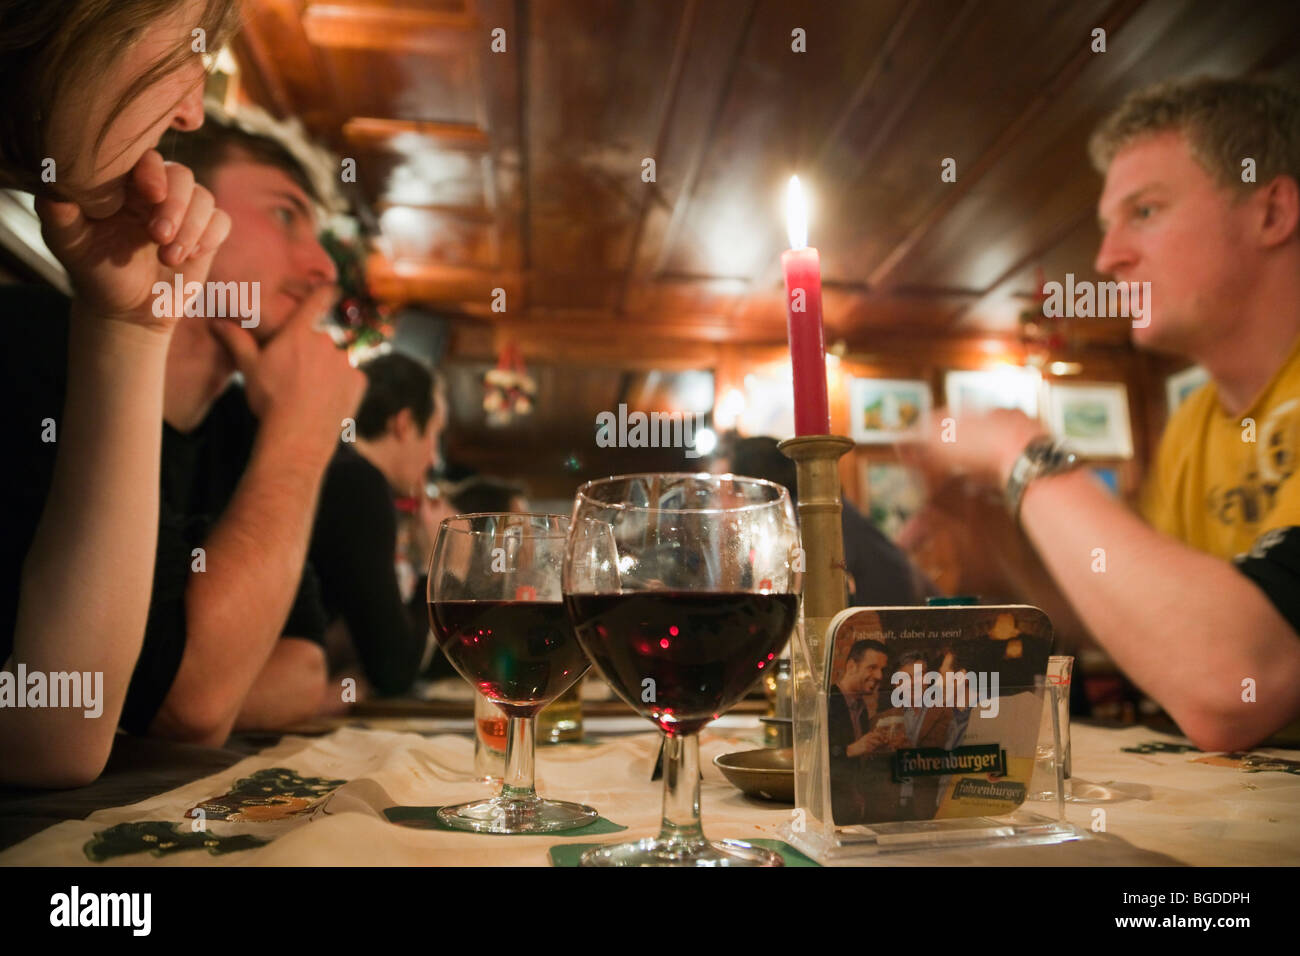 Hygge quotidiana scena di giovani sat bevendo vino intorno a un tavolo in un bar. Lo stile di vita moderno. L'Austria, l'Europa. Foto Stock